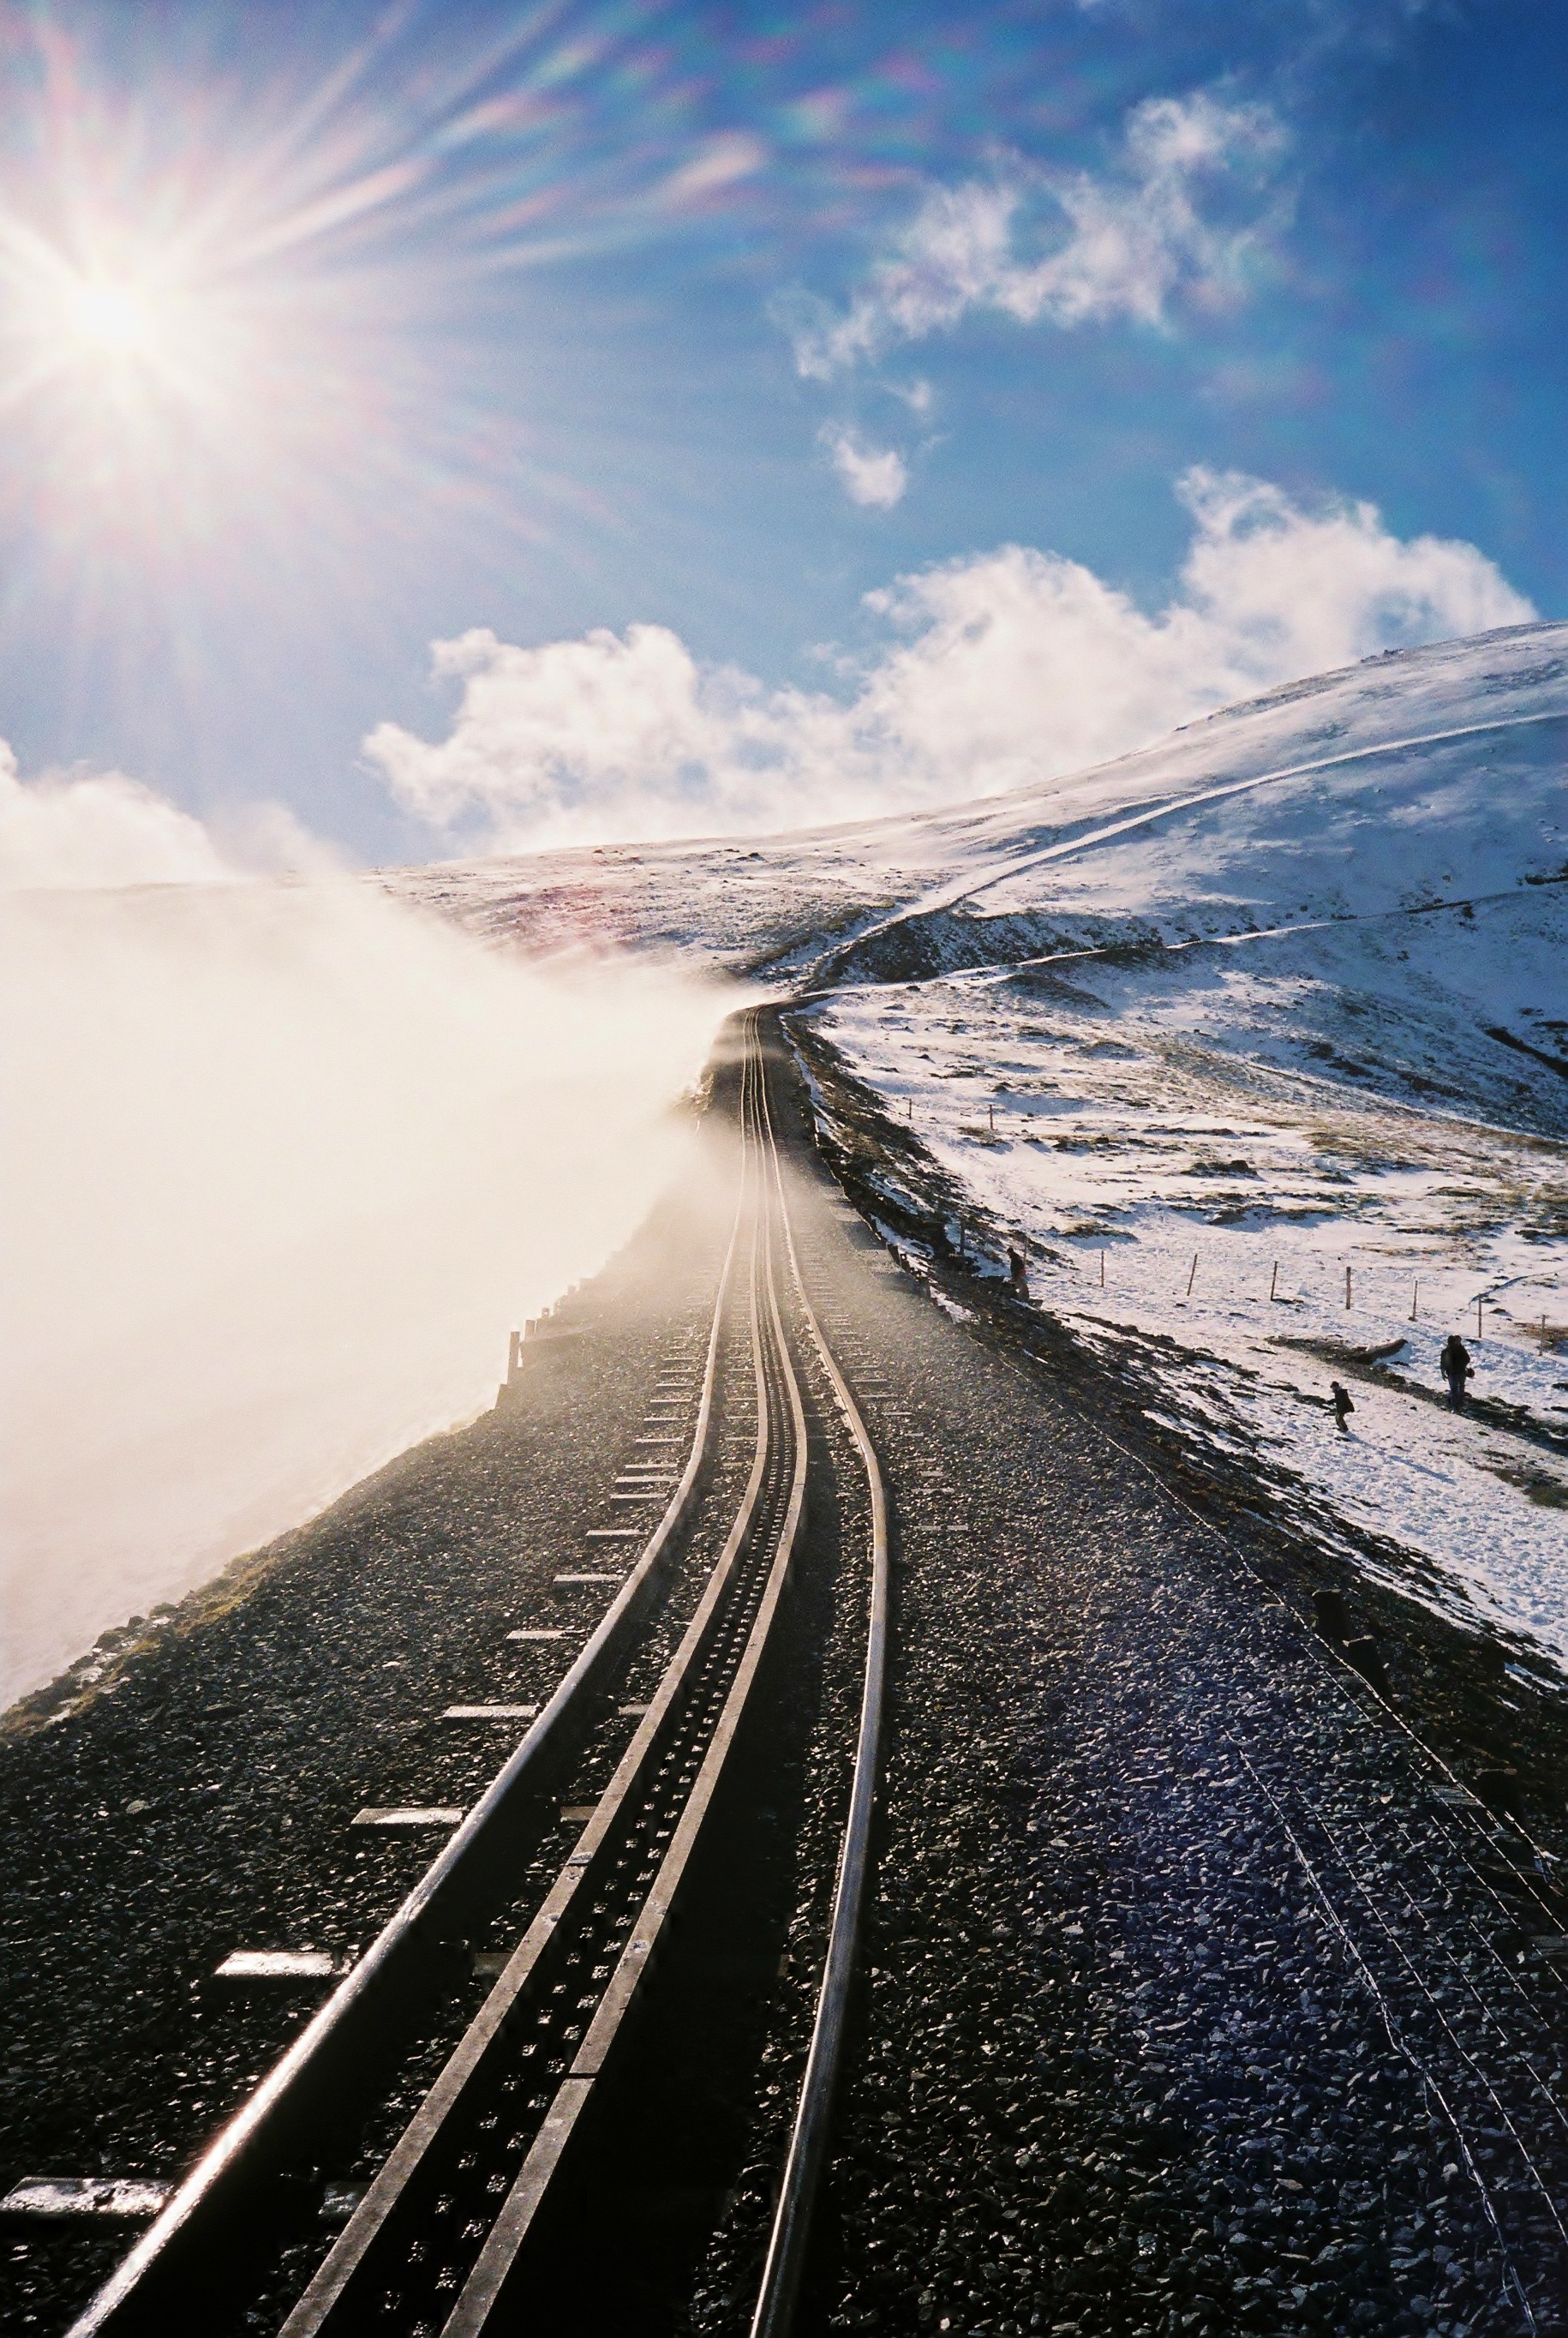 Snowdon Mountain Railway | XA4 | Superia | Lucy Wainwright